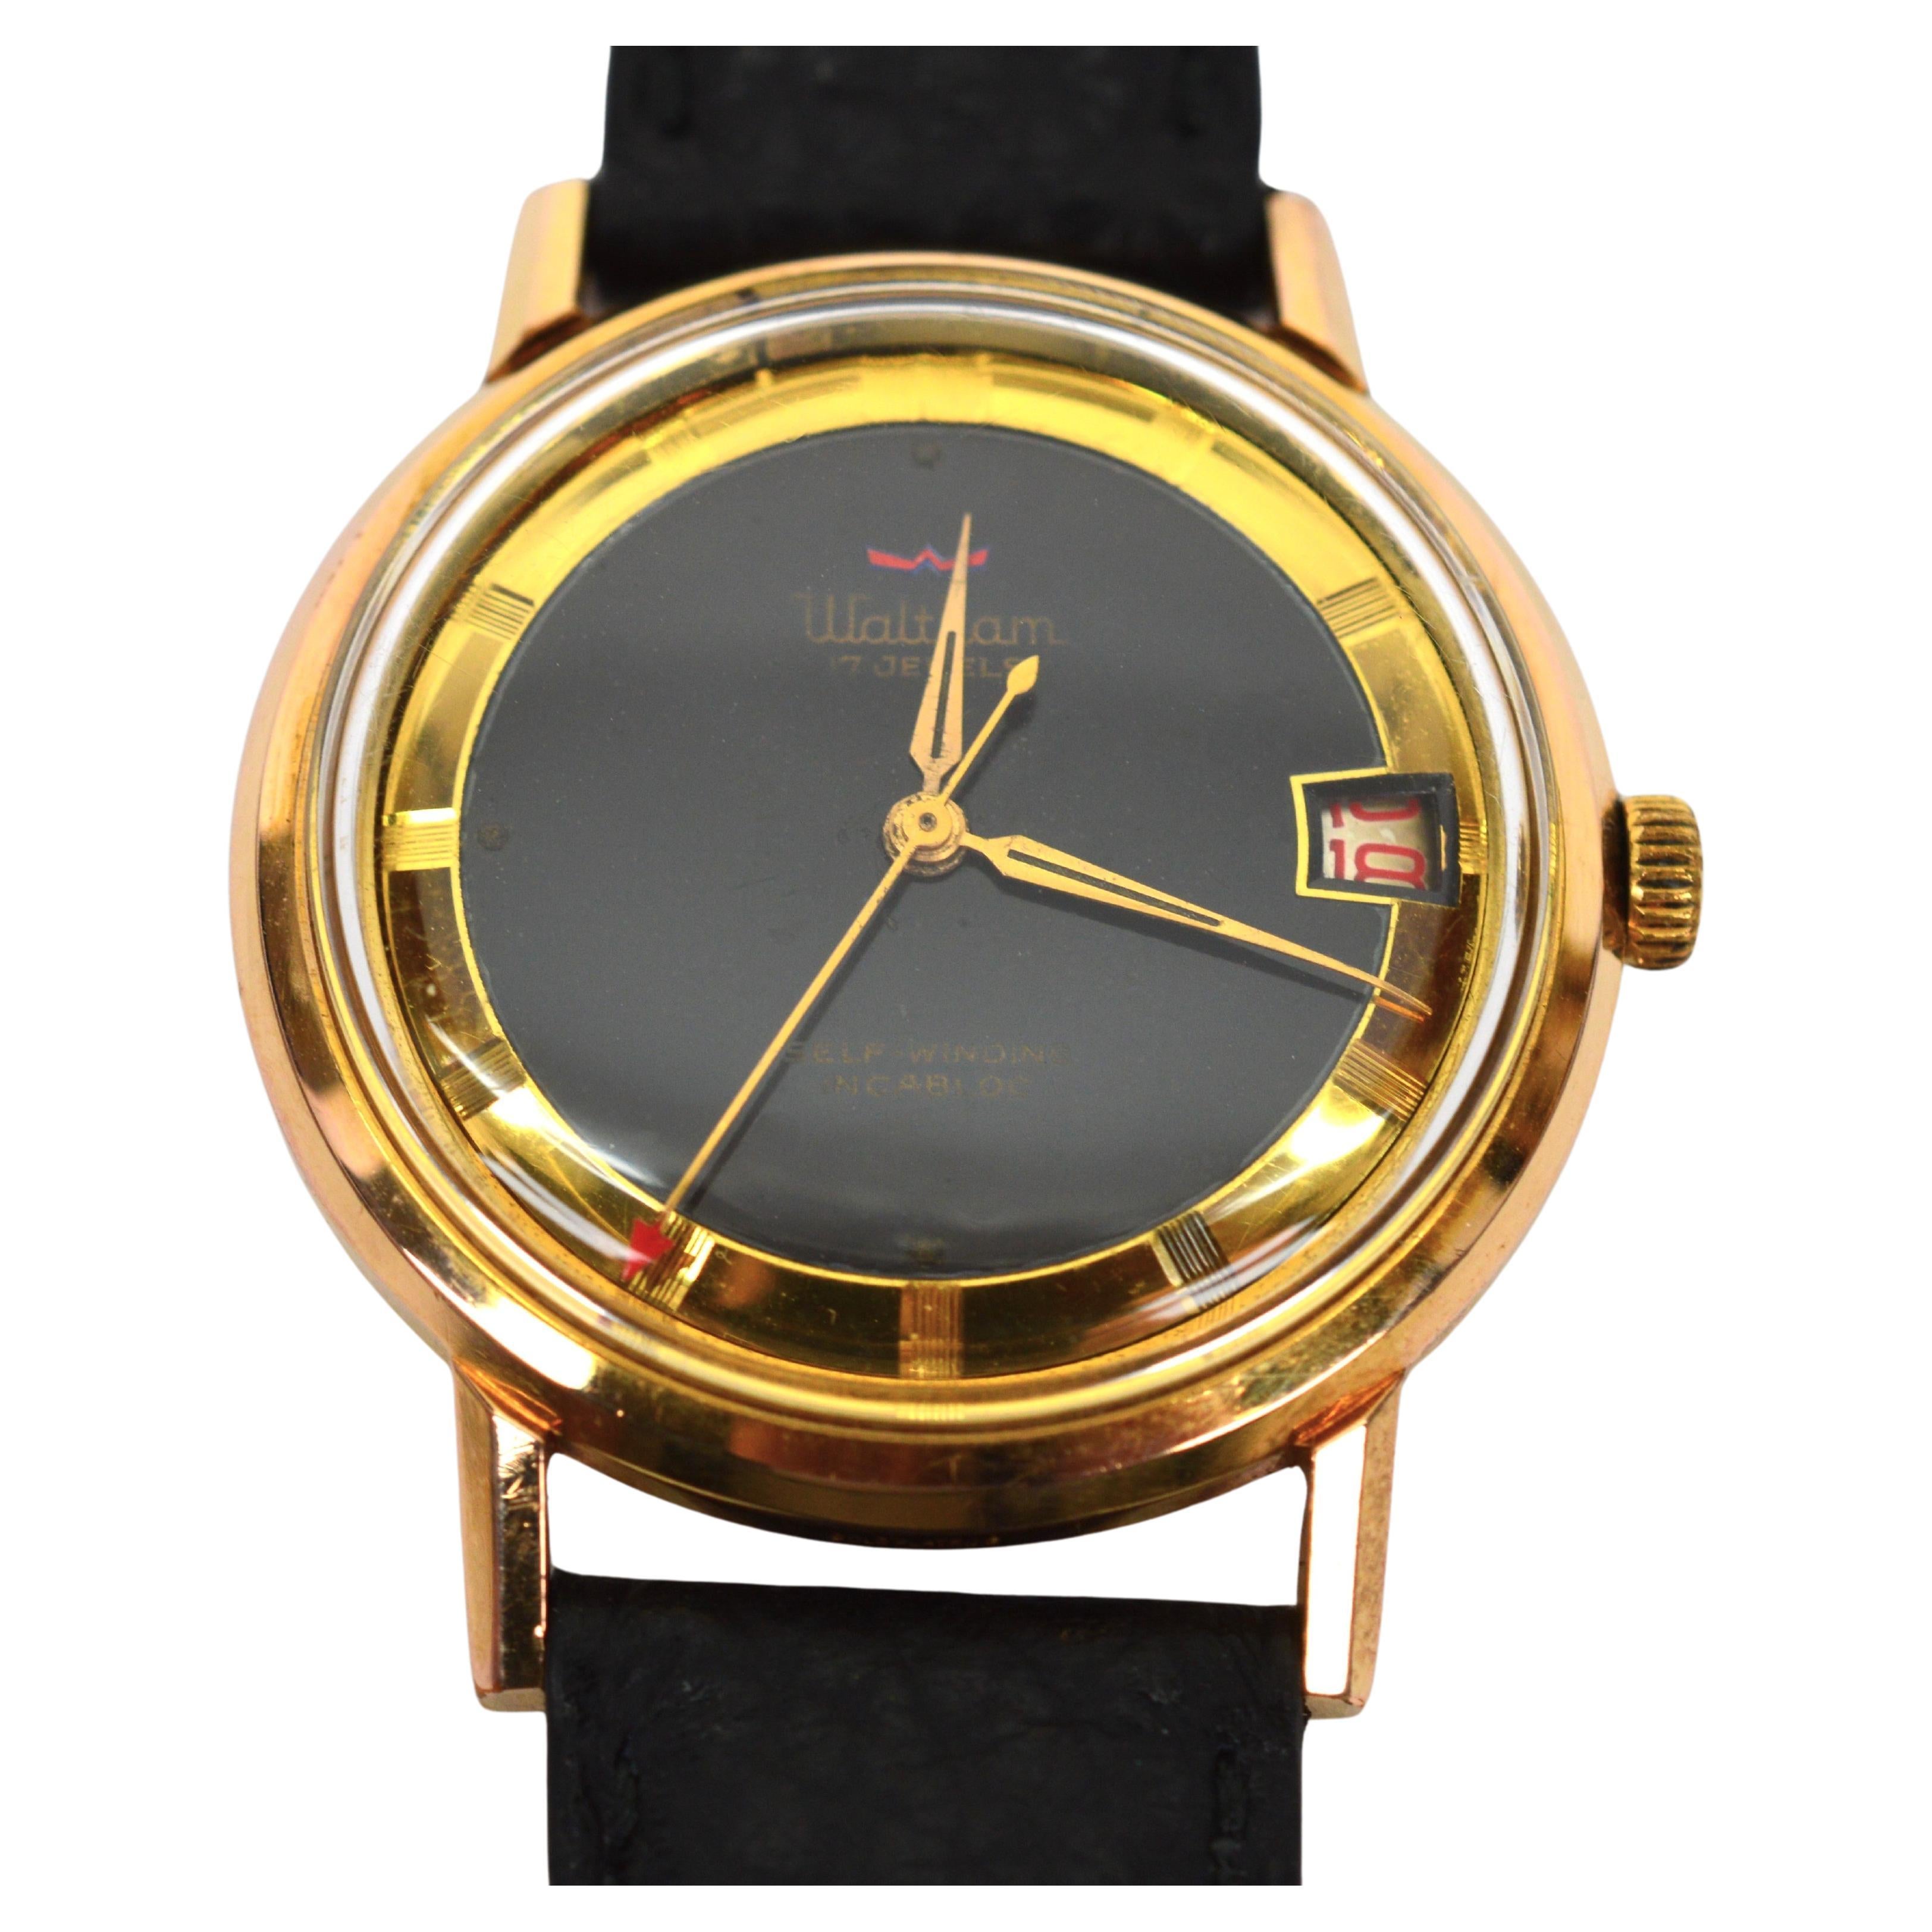 Reloj de pulsera para hombre Waltham Fontomatic con fecha